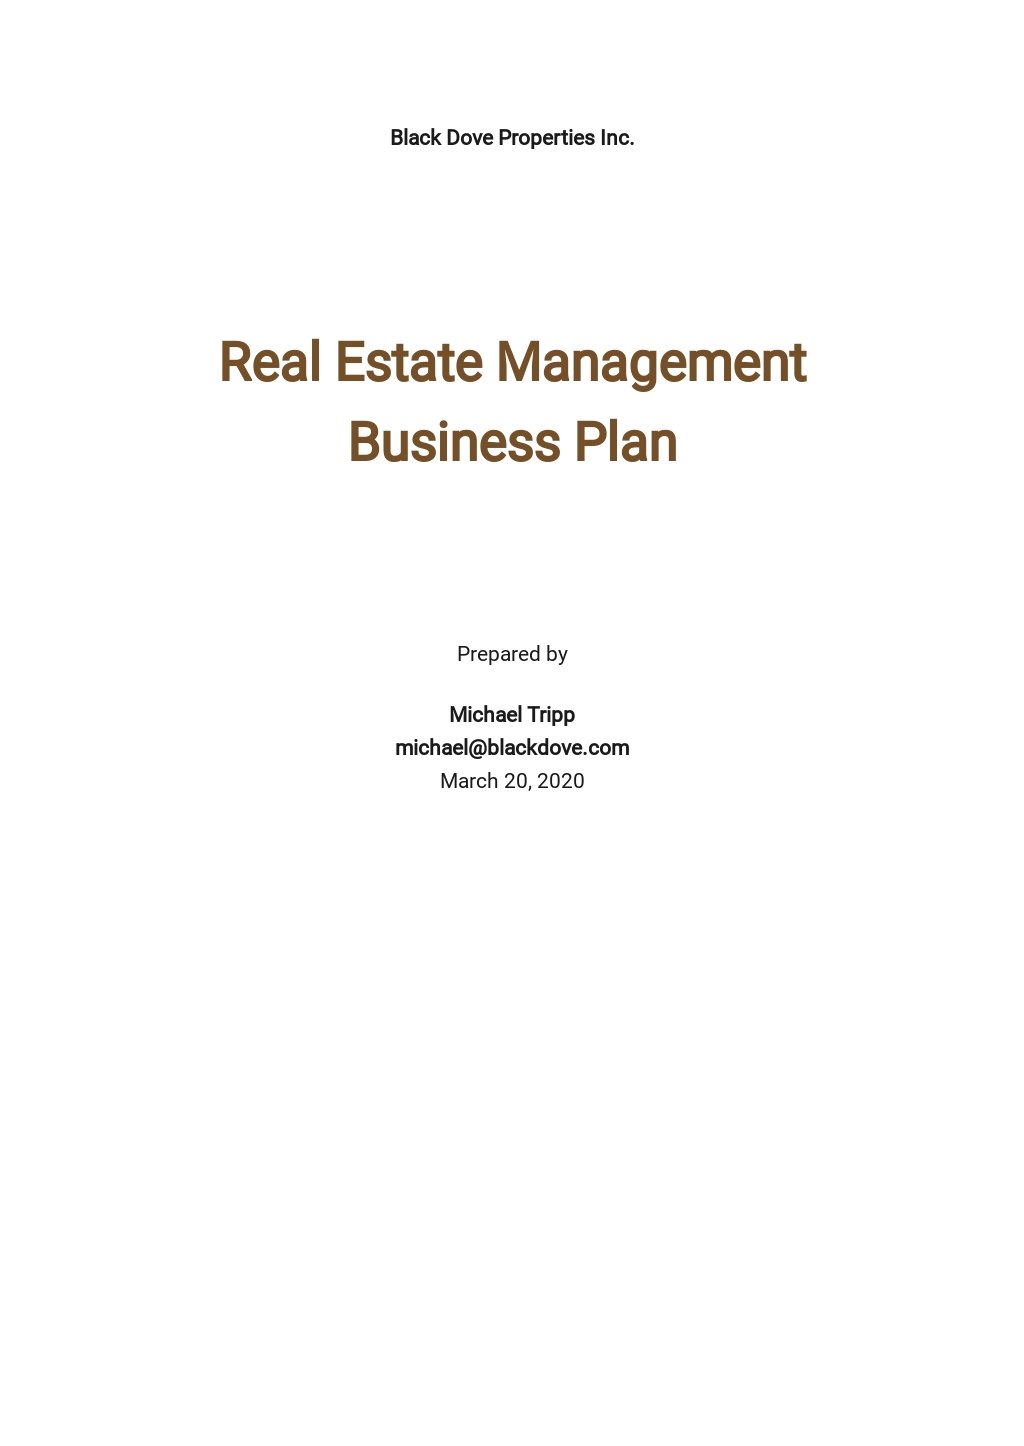 estate agency business plan pdf